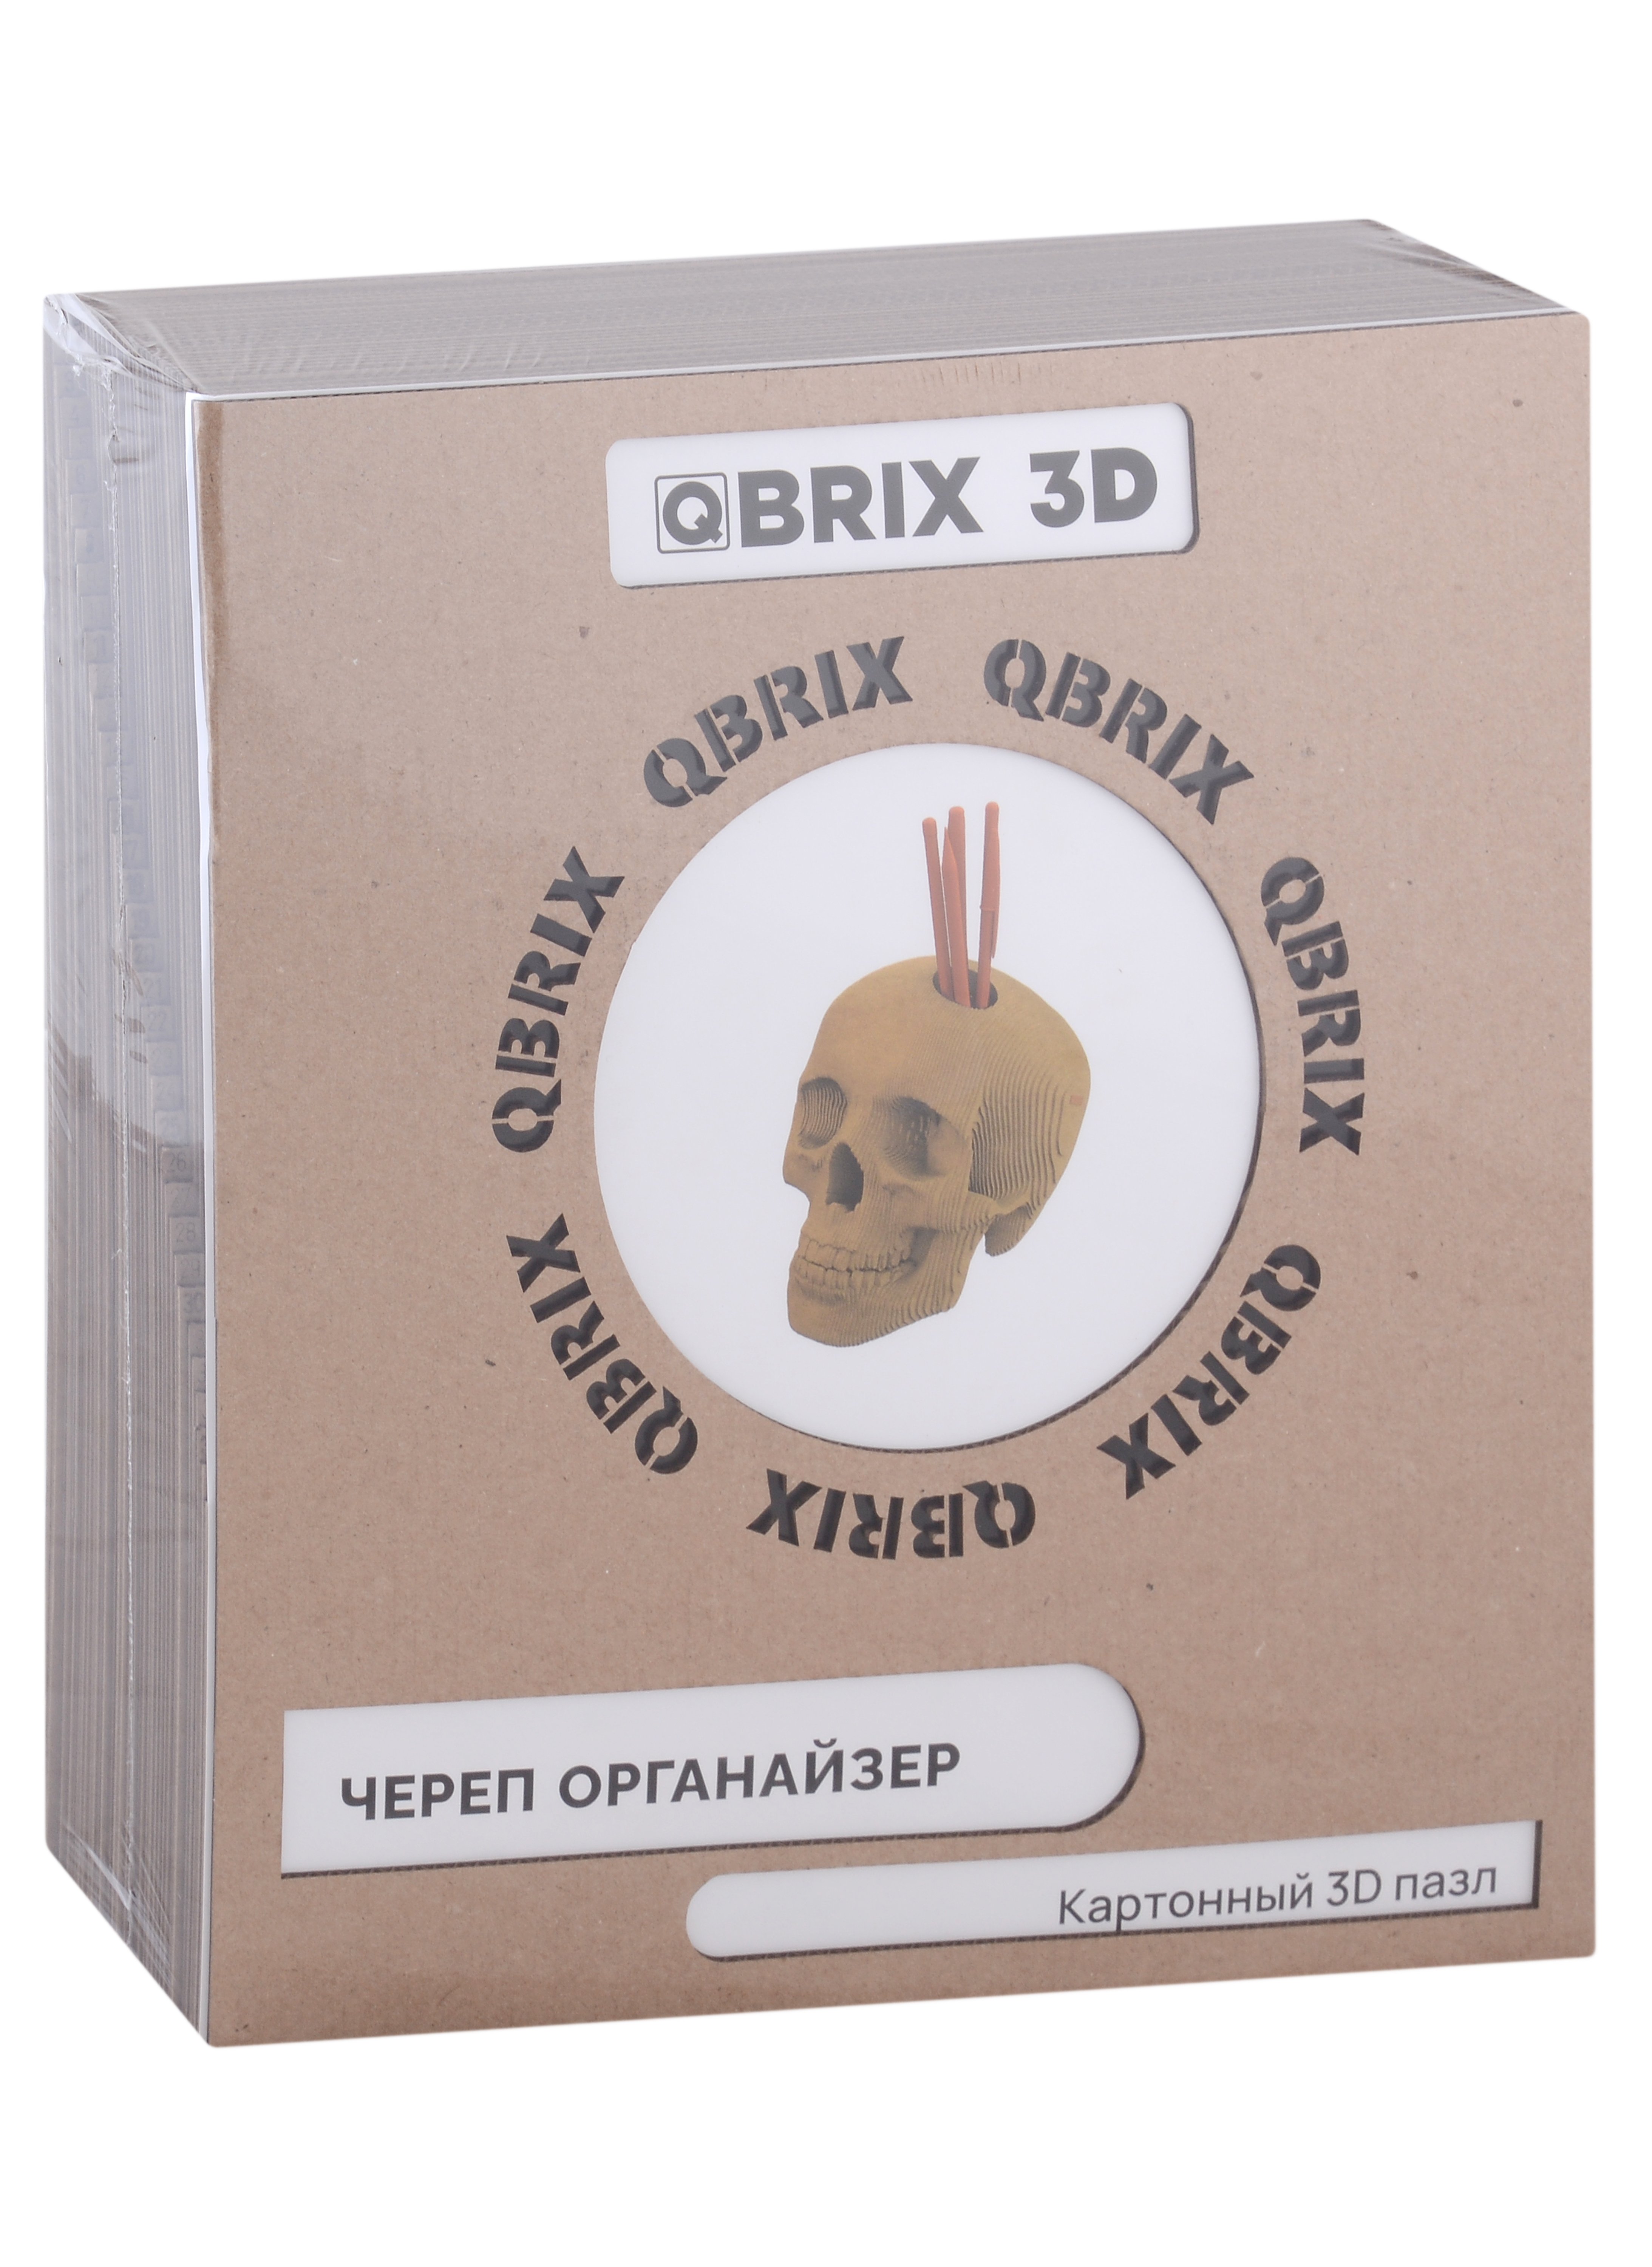 QBRIX  3D   